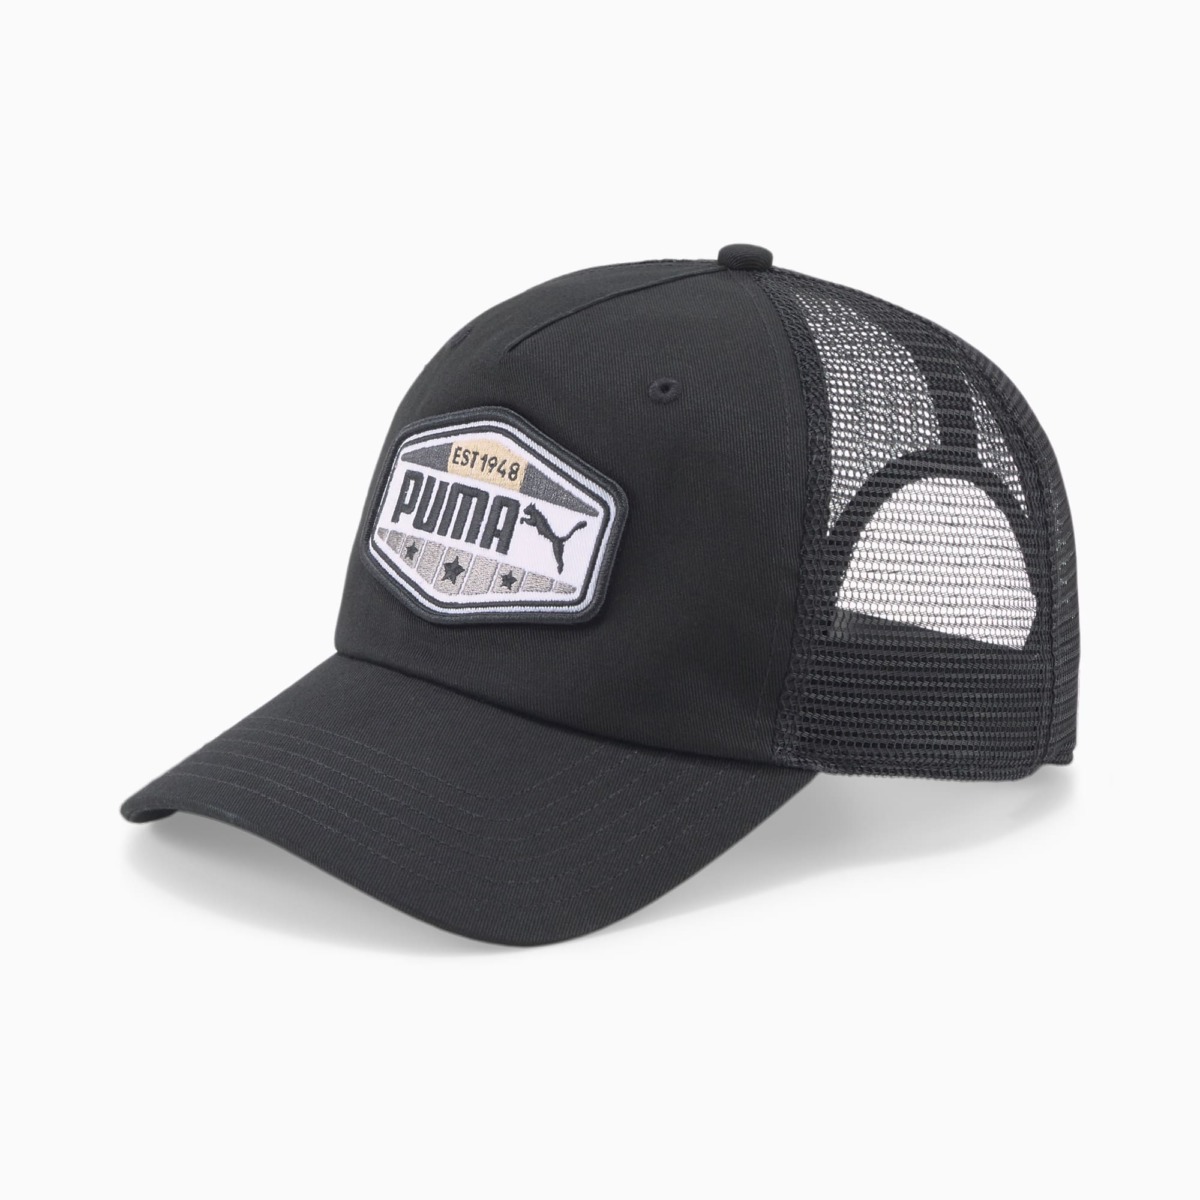 Black Trucker Cap For Men Puma Mens CAPS GOOFASH